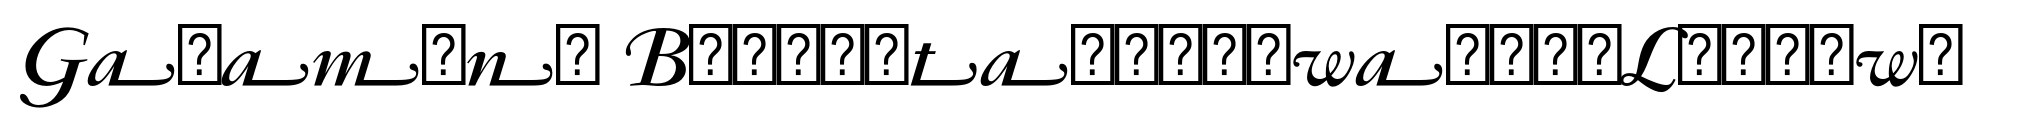 Garamond Bold Italic Swash (Ludlow) image